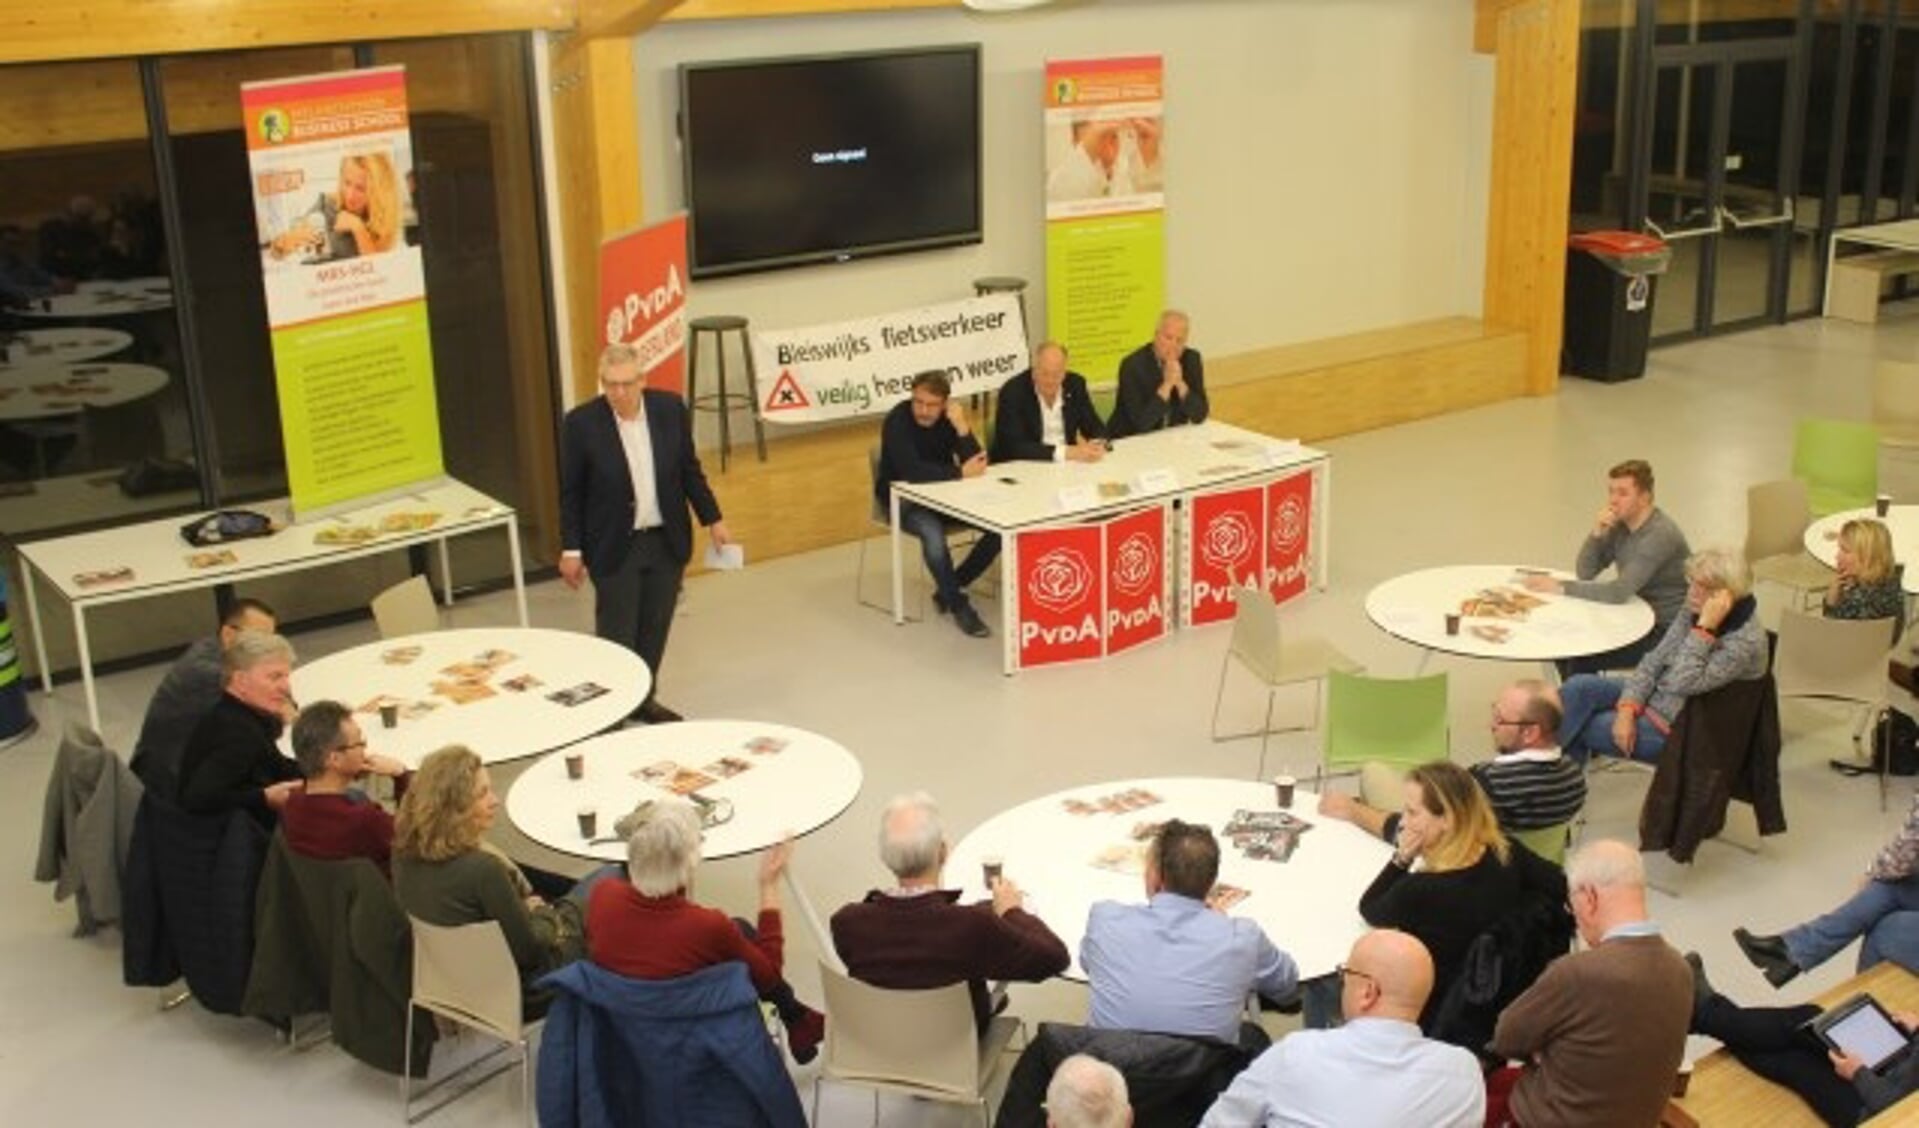 Het debat vond plaats in de aula van Melanchton Businessschool in Bleiswijk.